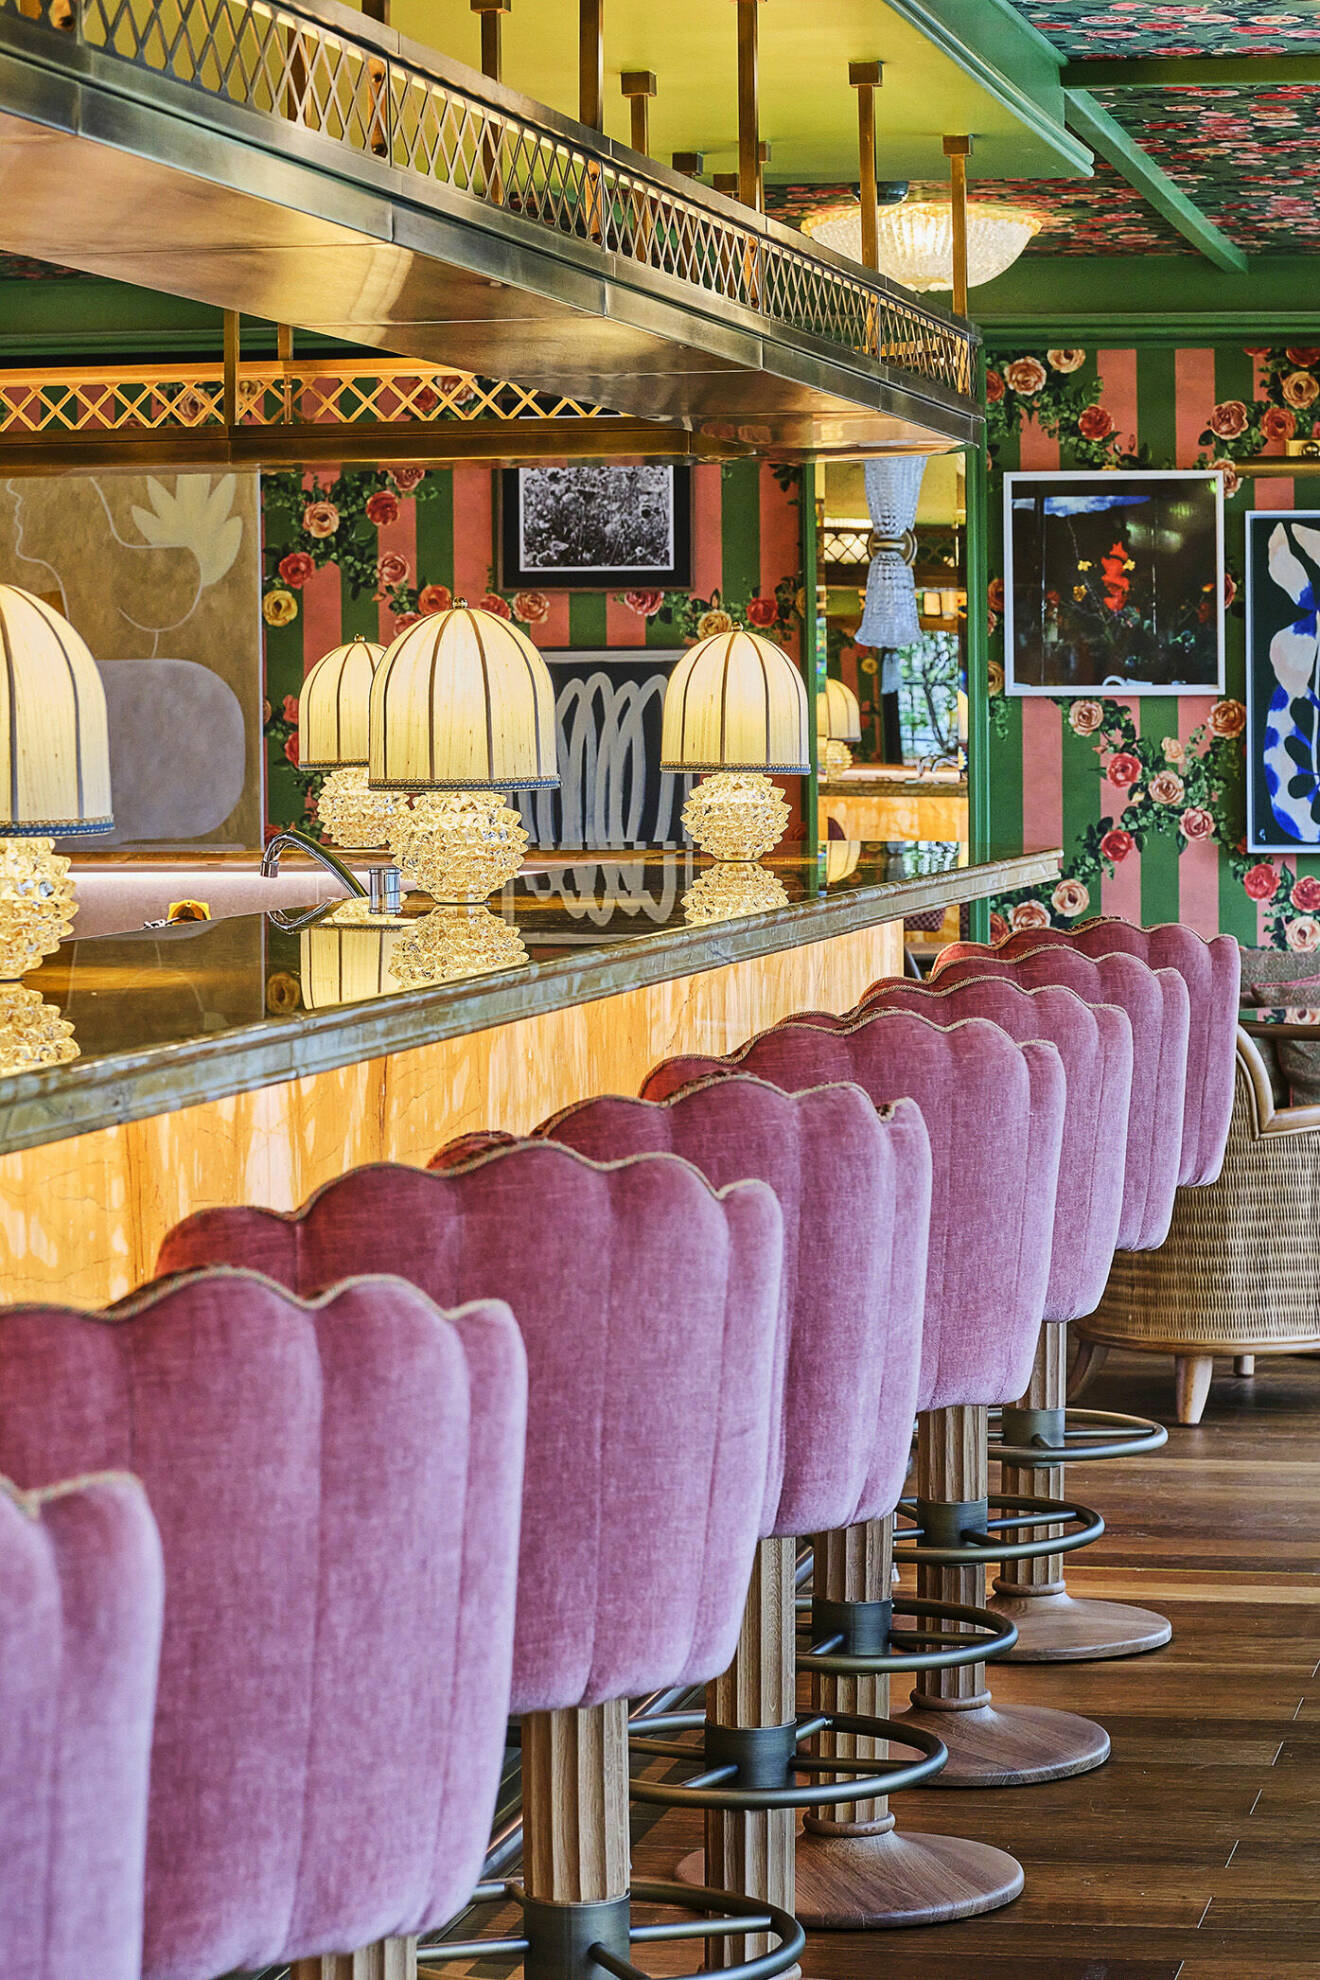 Hotellet La Fantaisie och tillhörande restaurangen Golden Poppy är inredda av den svenske designern Martin Brudnizki.